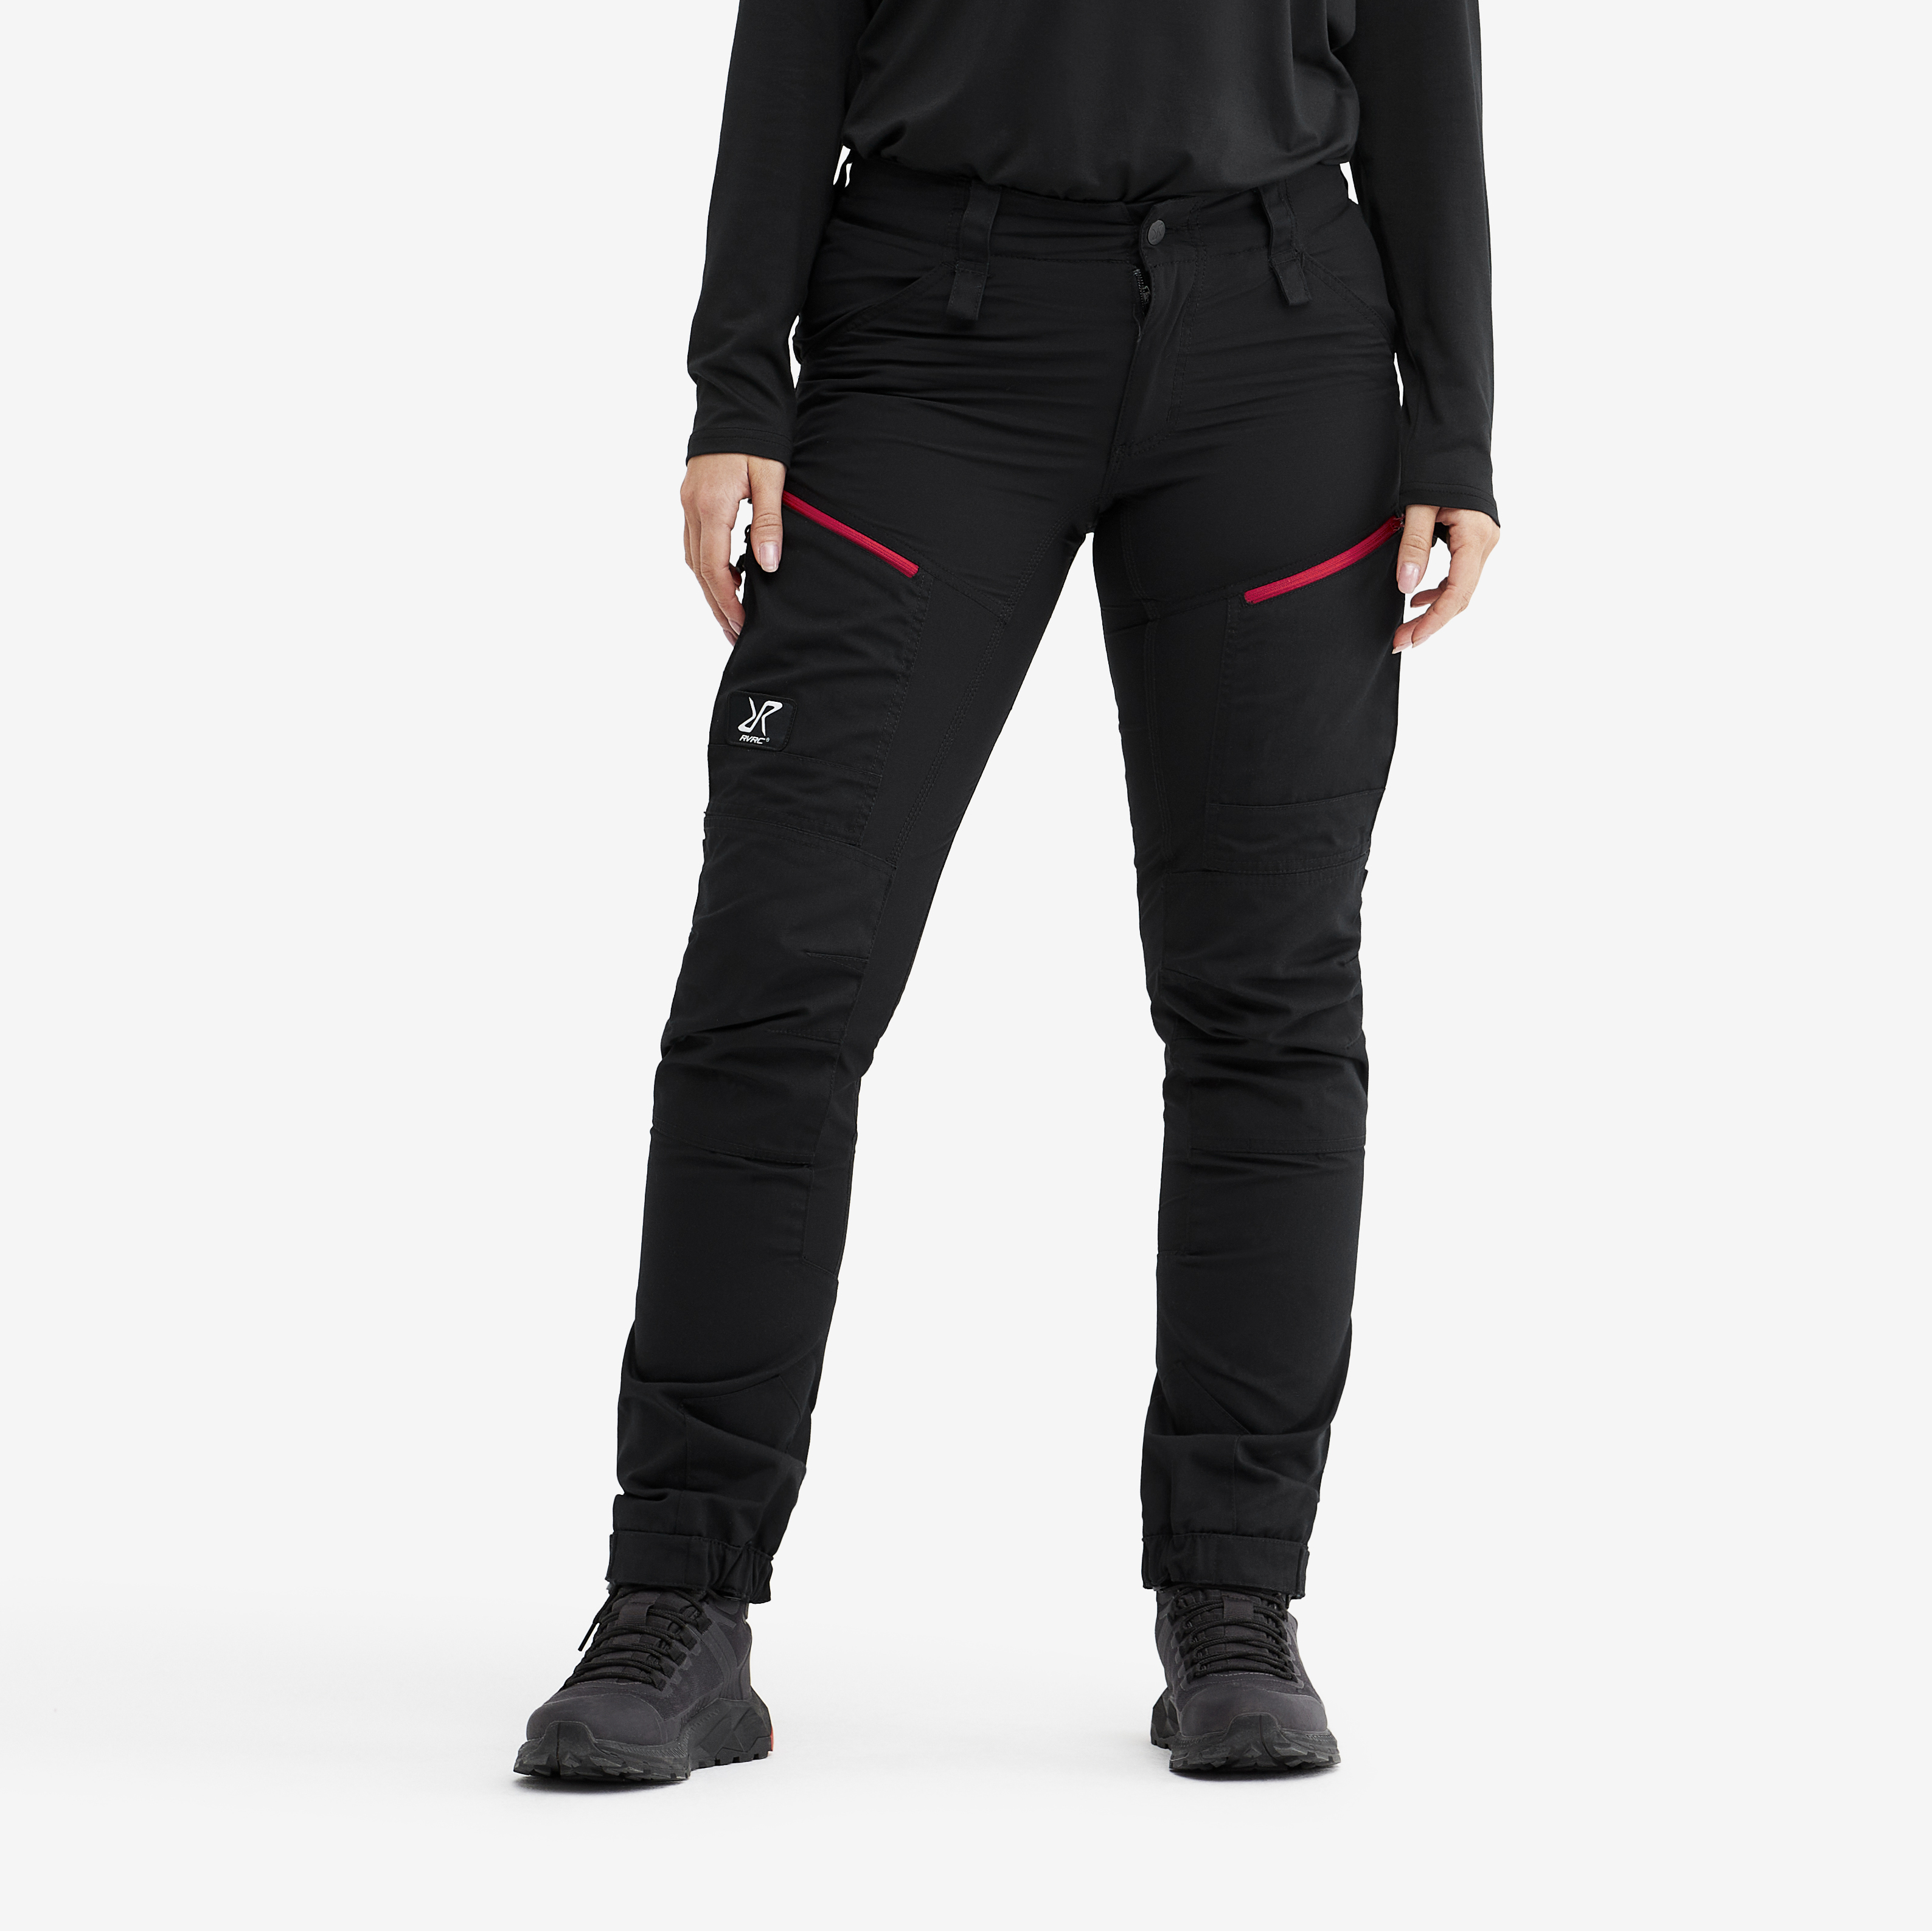 RVRC GP Pro turistické kalhoty pro ženy v černé barvě